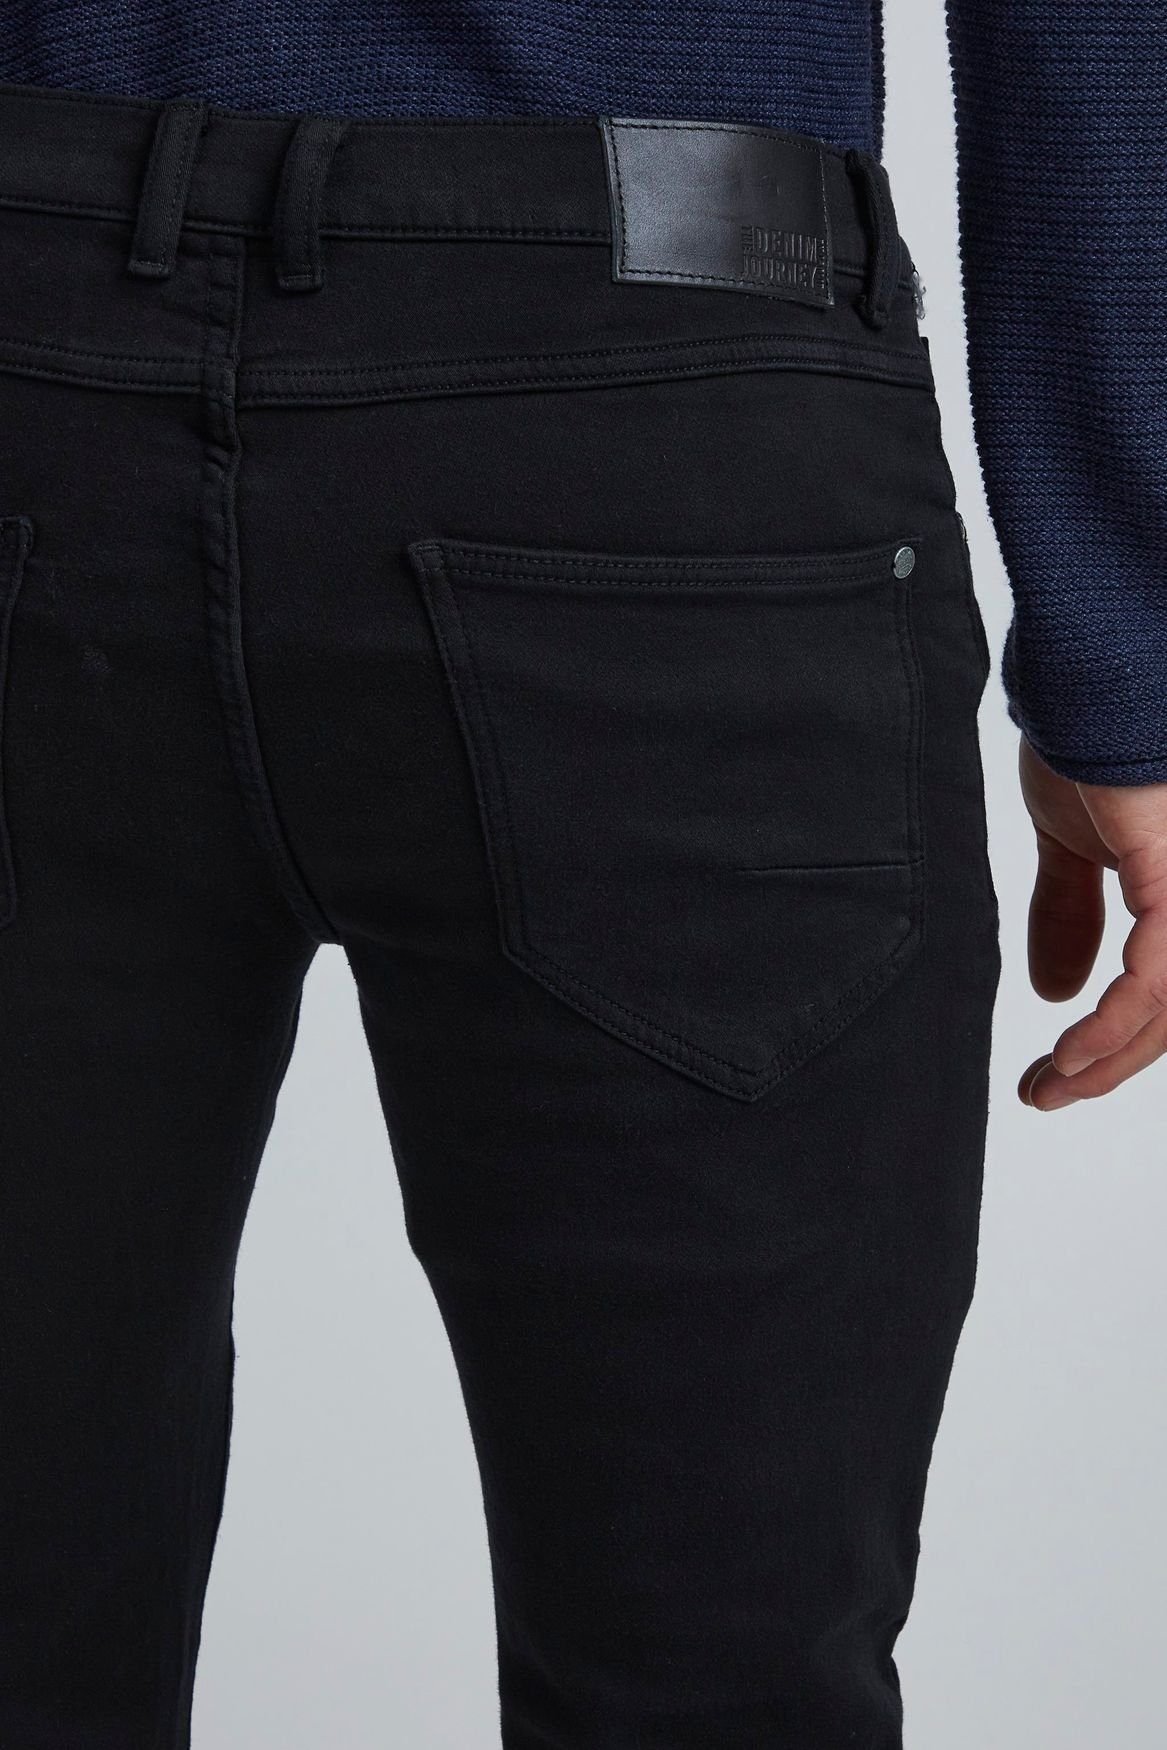 in 4121 Black (1-tlg) Fit Jeans Slim Denim Pants Slim-fit-Jeans Schwarz Basic SDTot !Solid